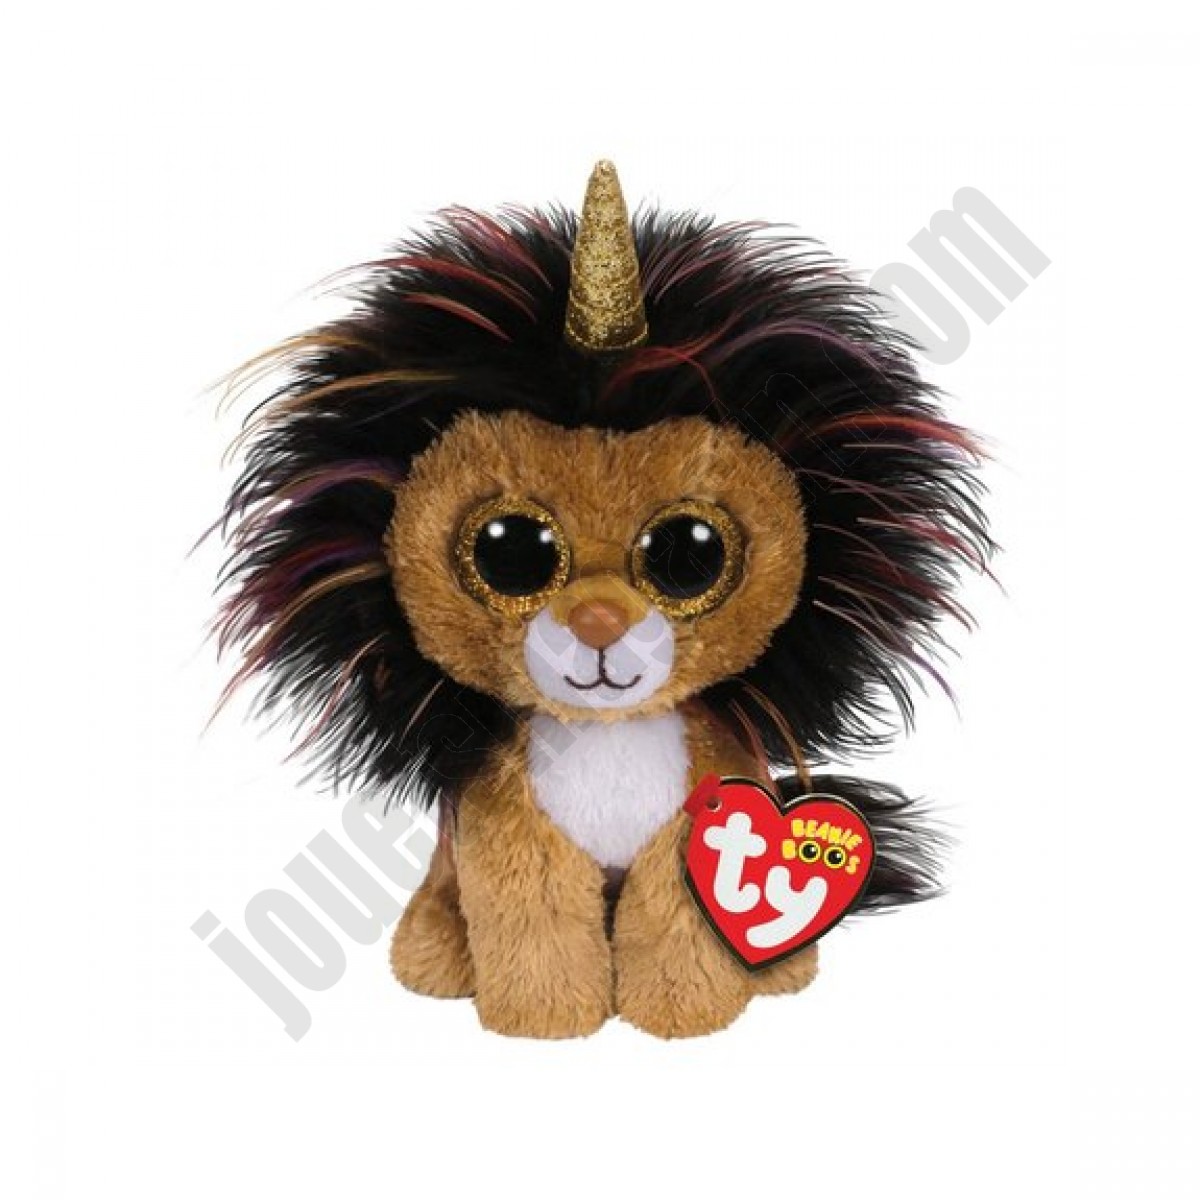 Beanie boo's - Ramsey le lion licorne 15 cm ◆◆◆ Nouveau - Beanie boo's - Ramsey le lion licorne 15 cm ◆◆◆ Nouveau